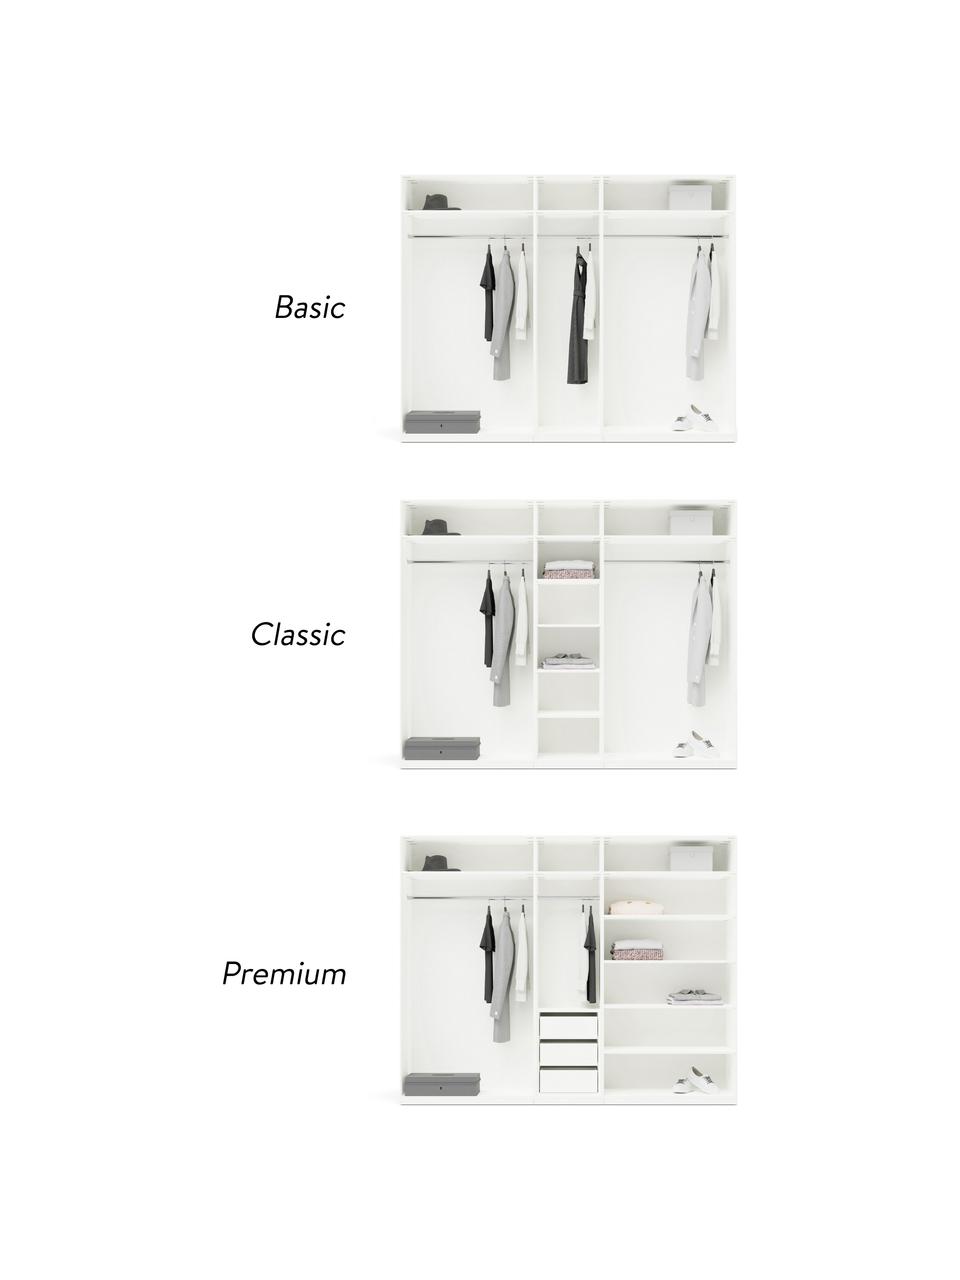 Modulaire draaideurkast Charlotte in wit, 250 cm breed, meerdere varianten, Frame: met melamine beklede spaa, Wit, Basis interieur, hoogte 200 cm